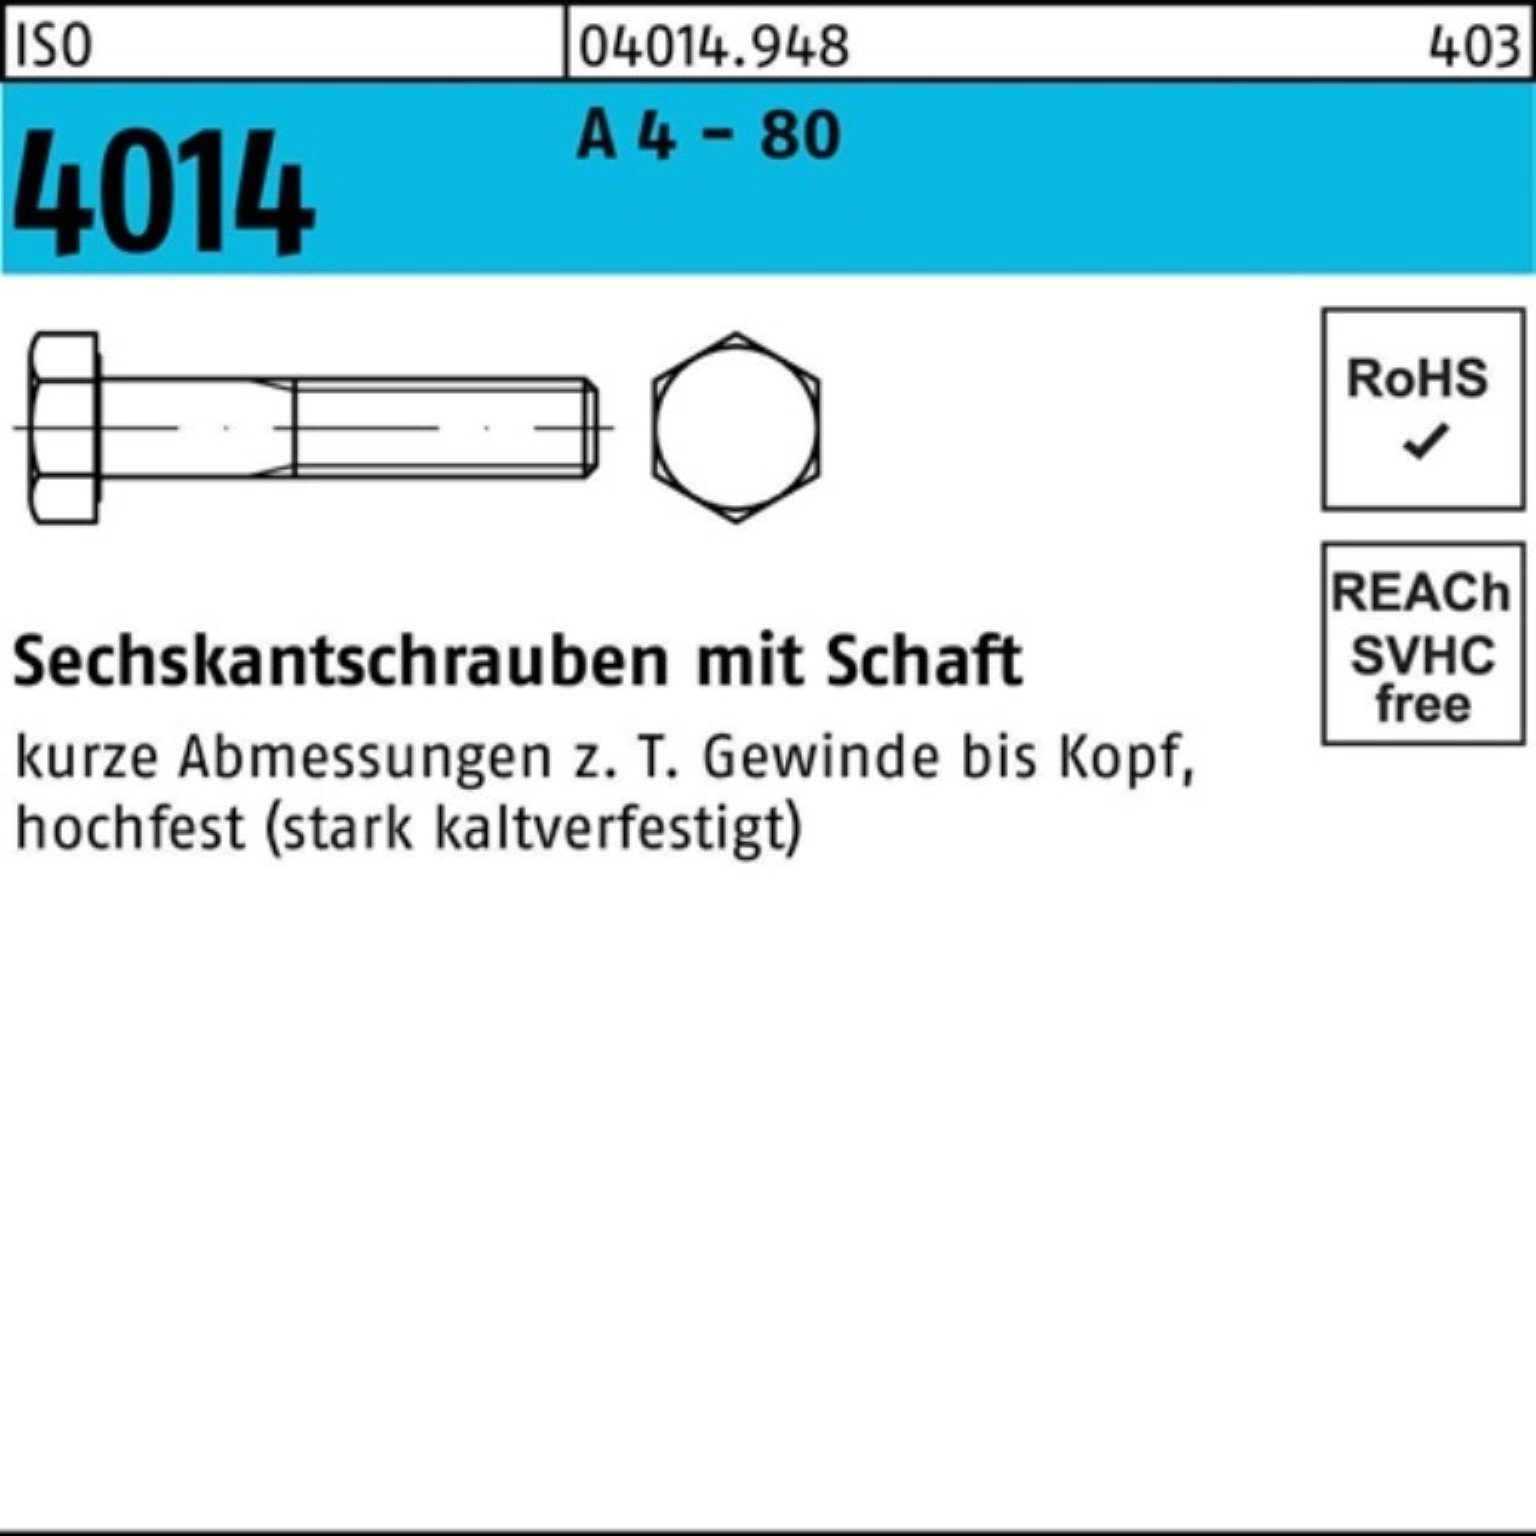 Sechskantschraube Pack A Reyher 4 Stüc Sechskantschraube 100er ISO Schaft 140 M10x - 1 4014 80